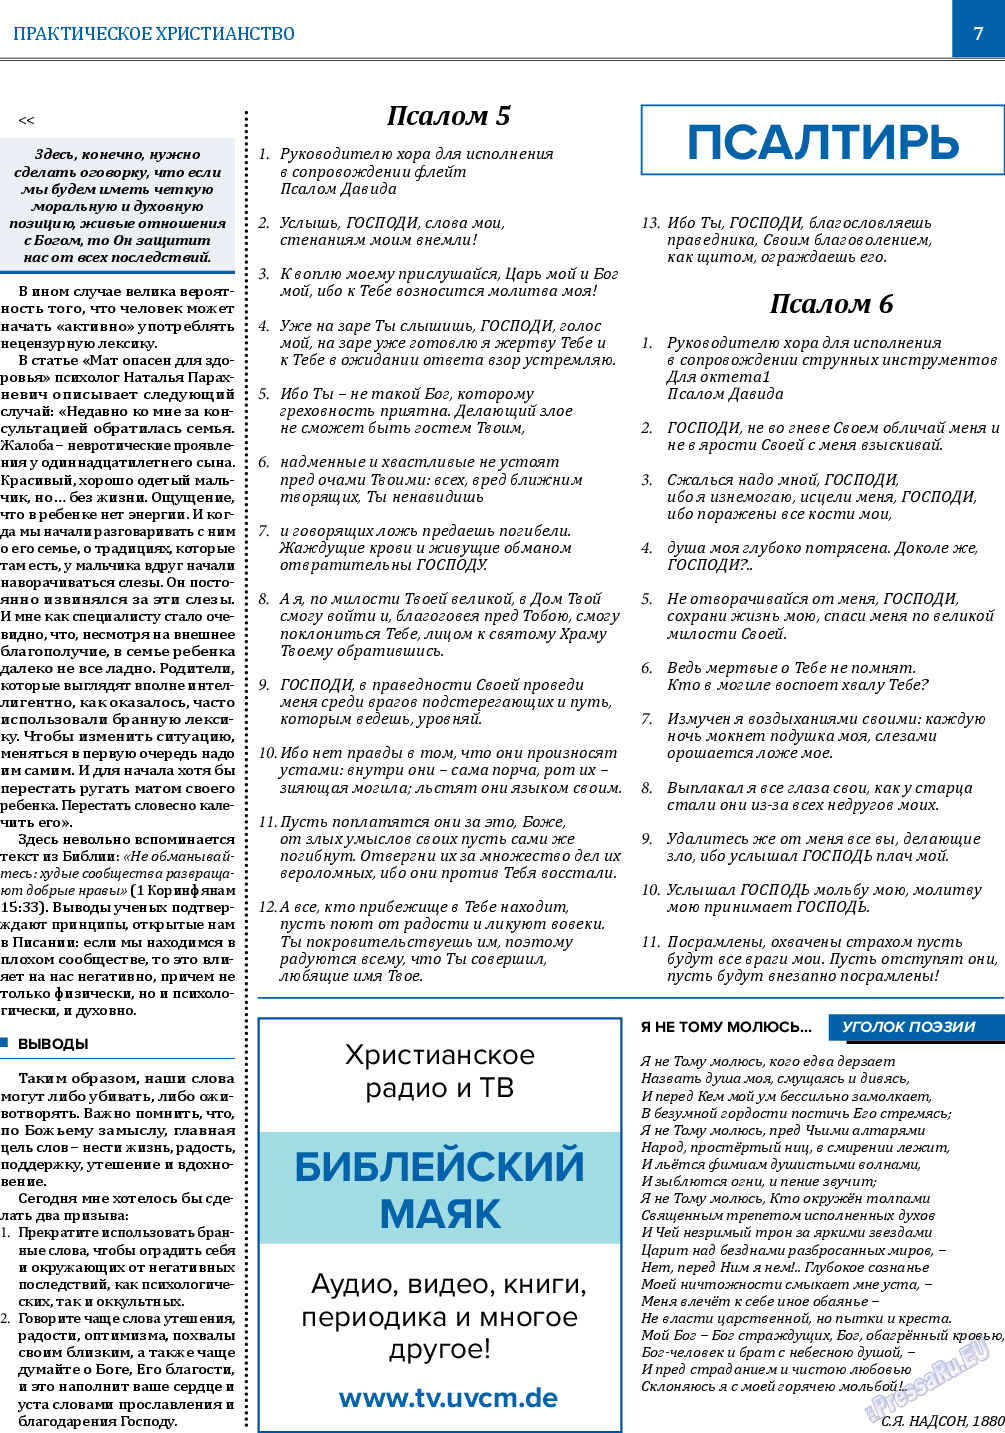 Вечное сокровище, газета. 2022 №6 стр.7